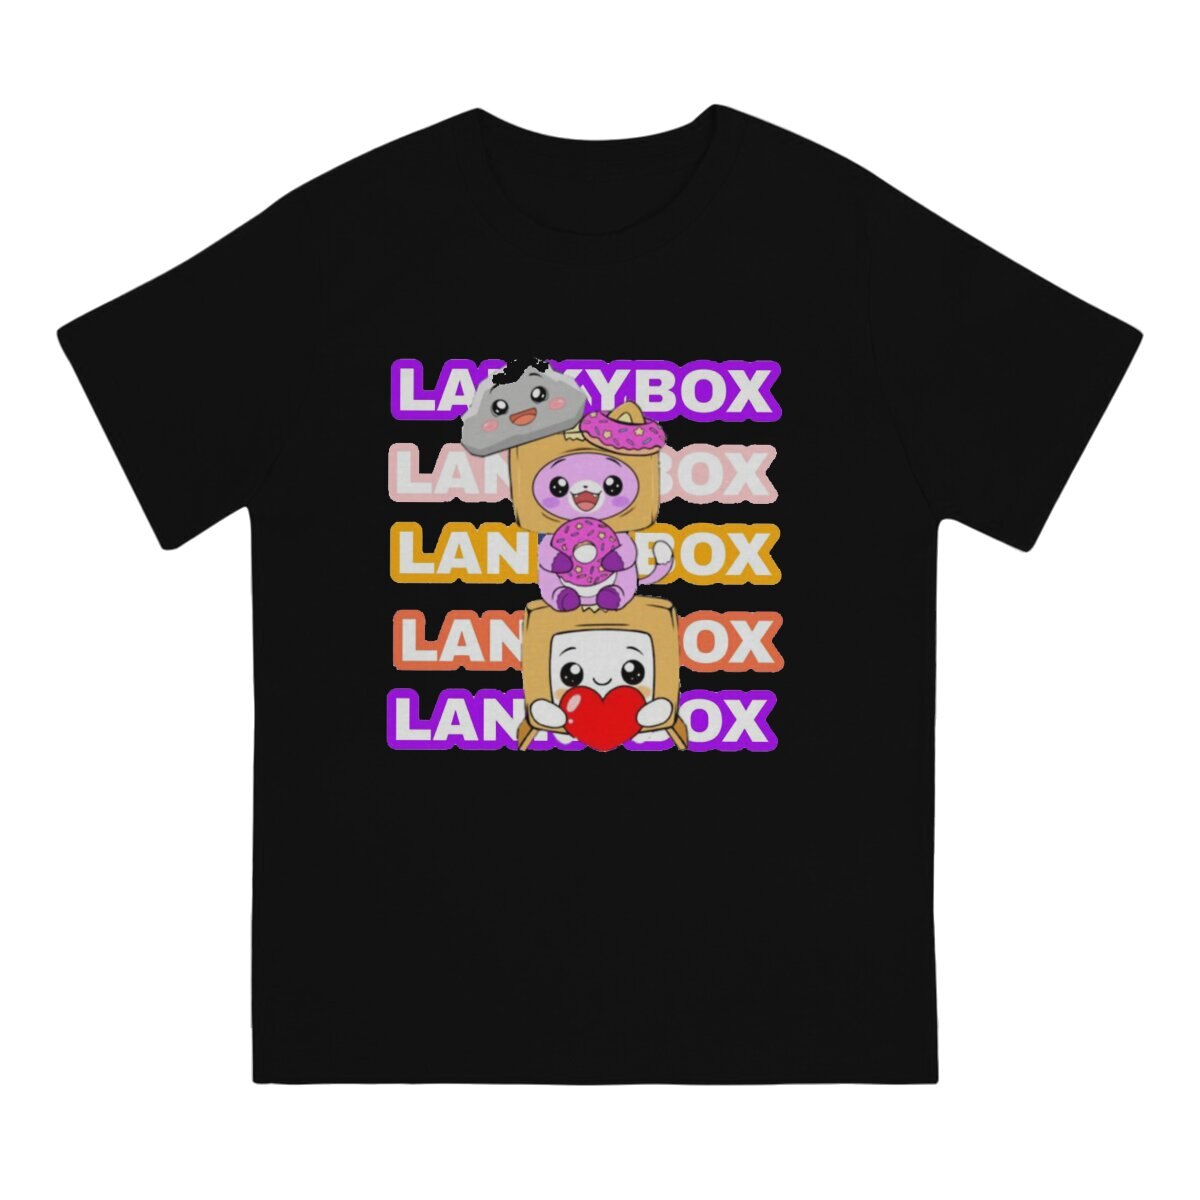 Youtube Men s T Shirt Lanky Box Amazing Tees Short Sleeve O Neck T Shirt 100 1 - Lankybox Plush